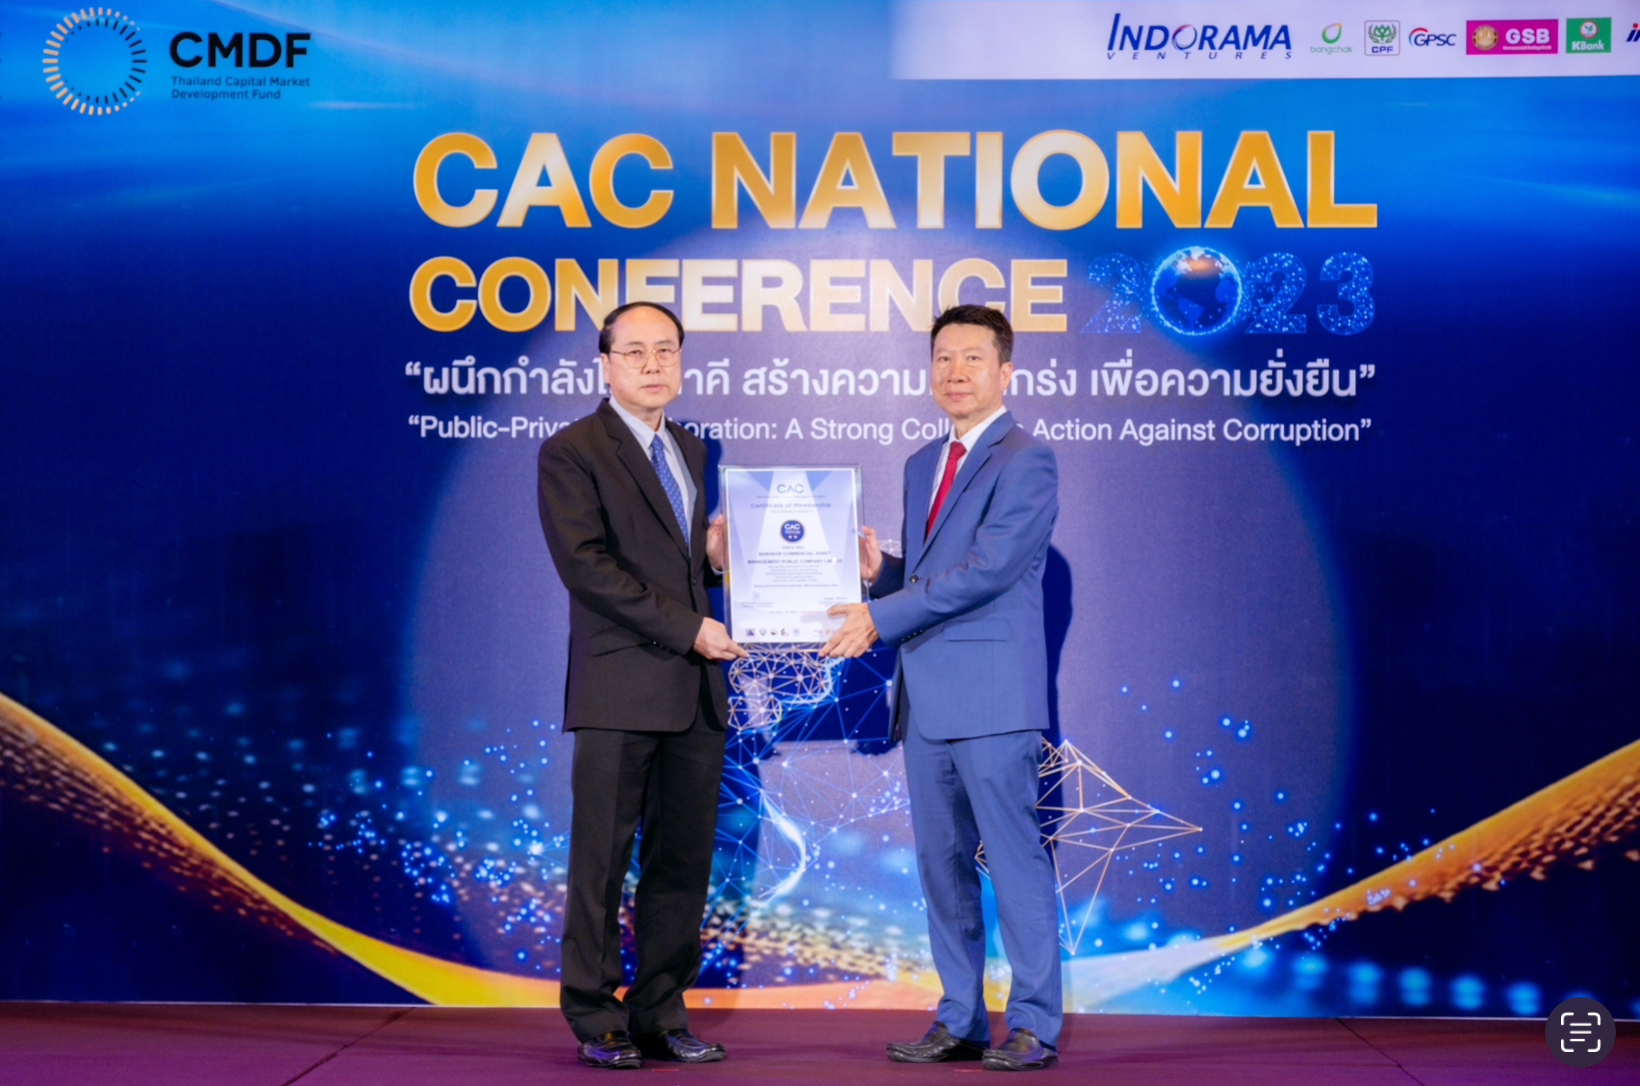 BAM ได้รับการรับรองต่ออายุสมาชิกแนวร่วมต่อต้านคอร์รัปชันของภาคเอกชนไทย (CAC) ต่อเนื่องเป็นครั้งที่ 2